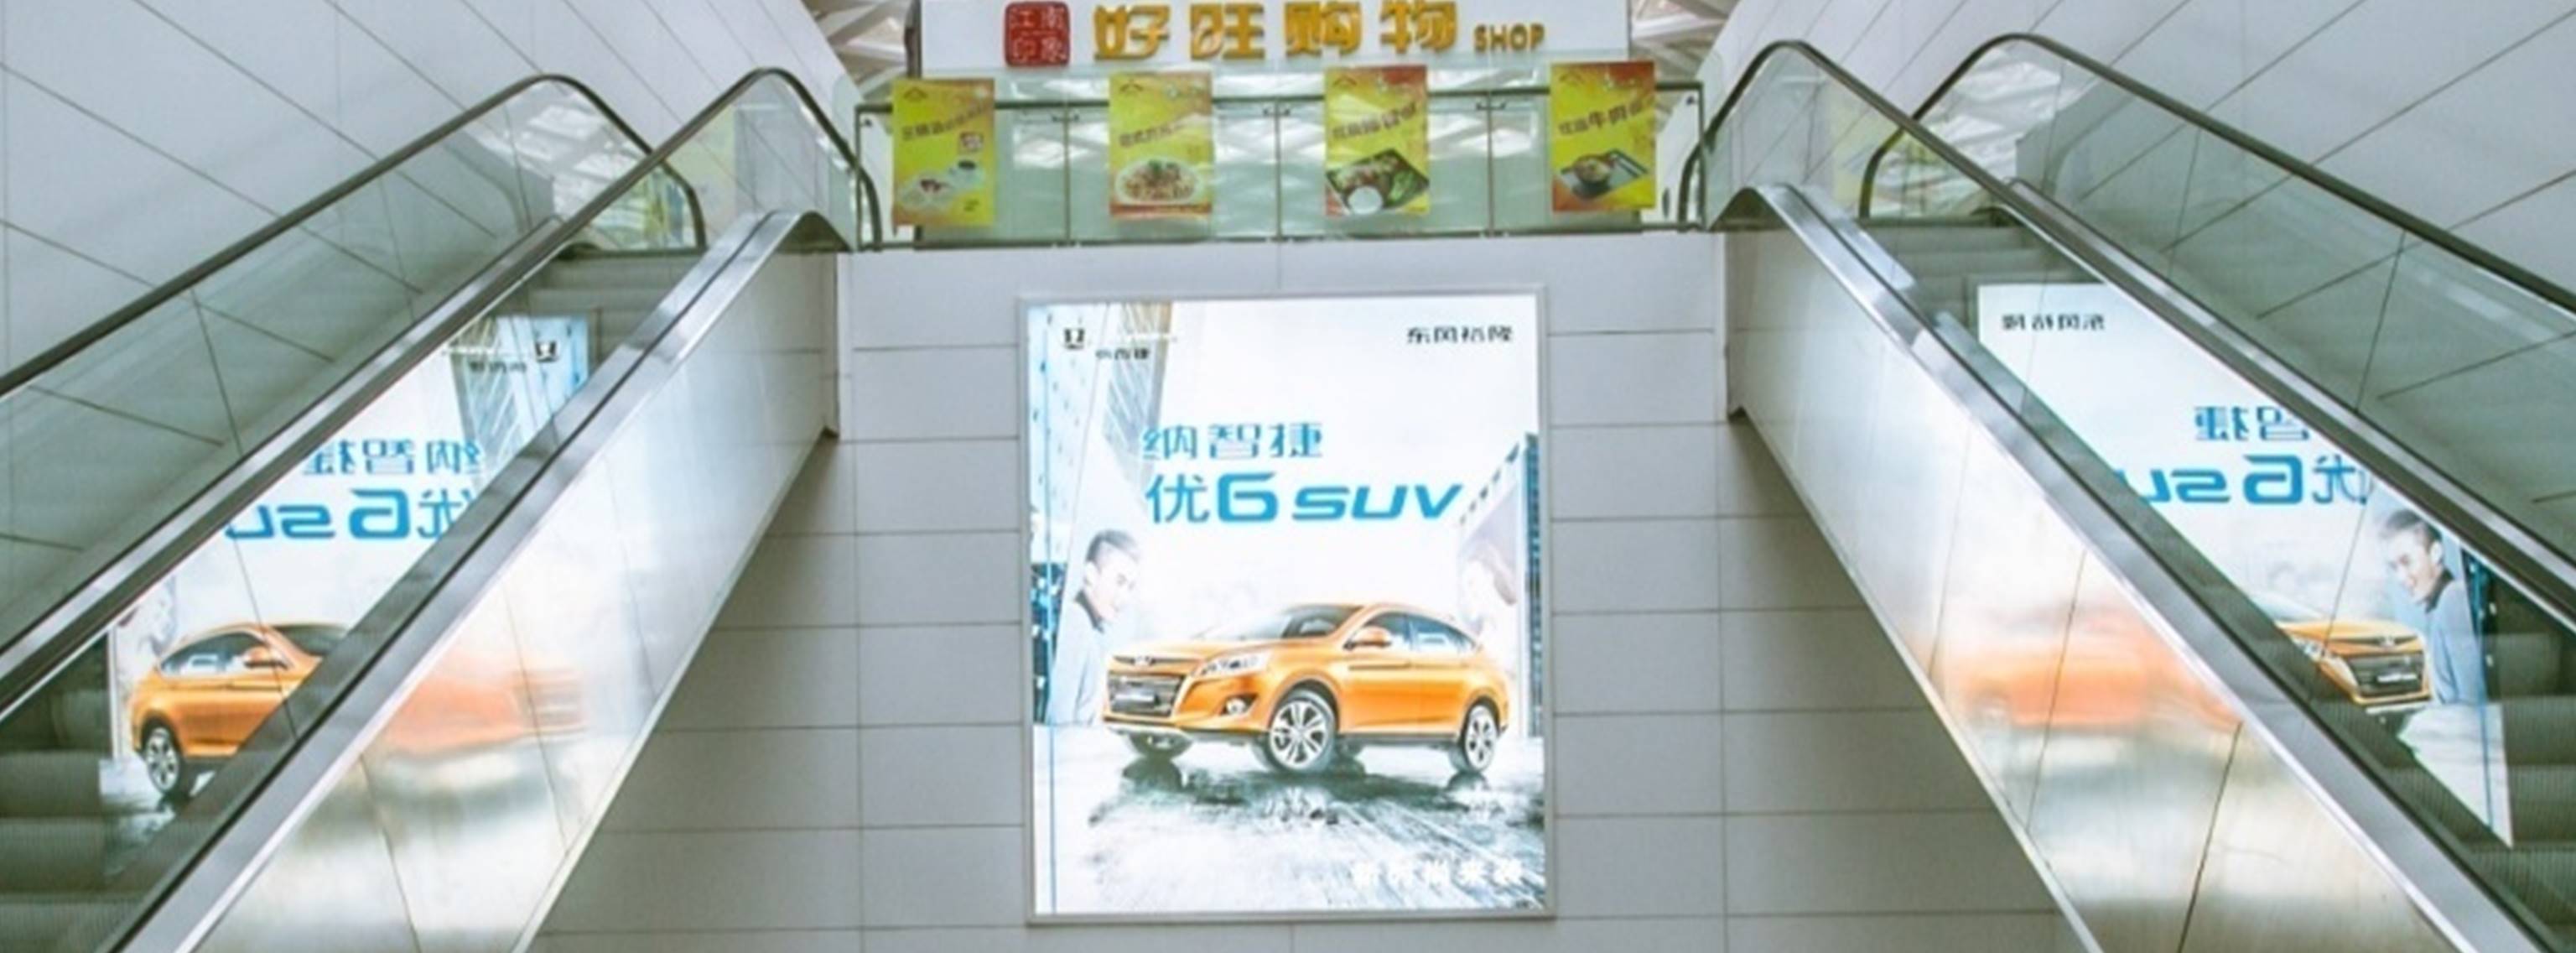 杭州萧山机场广告-T3指廊电梯口灯箱DD66/78